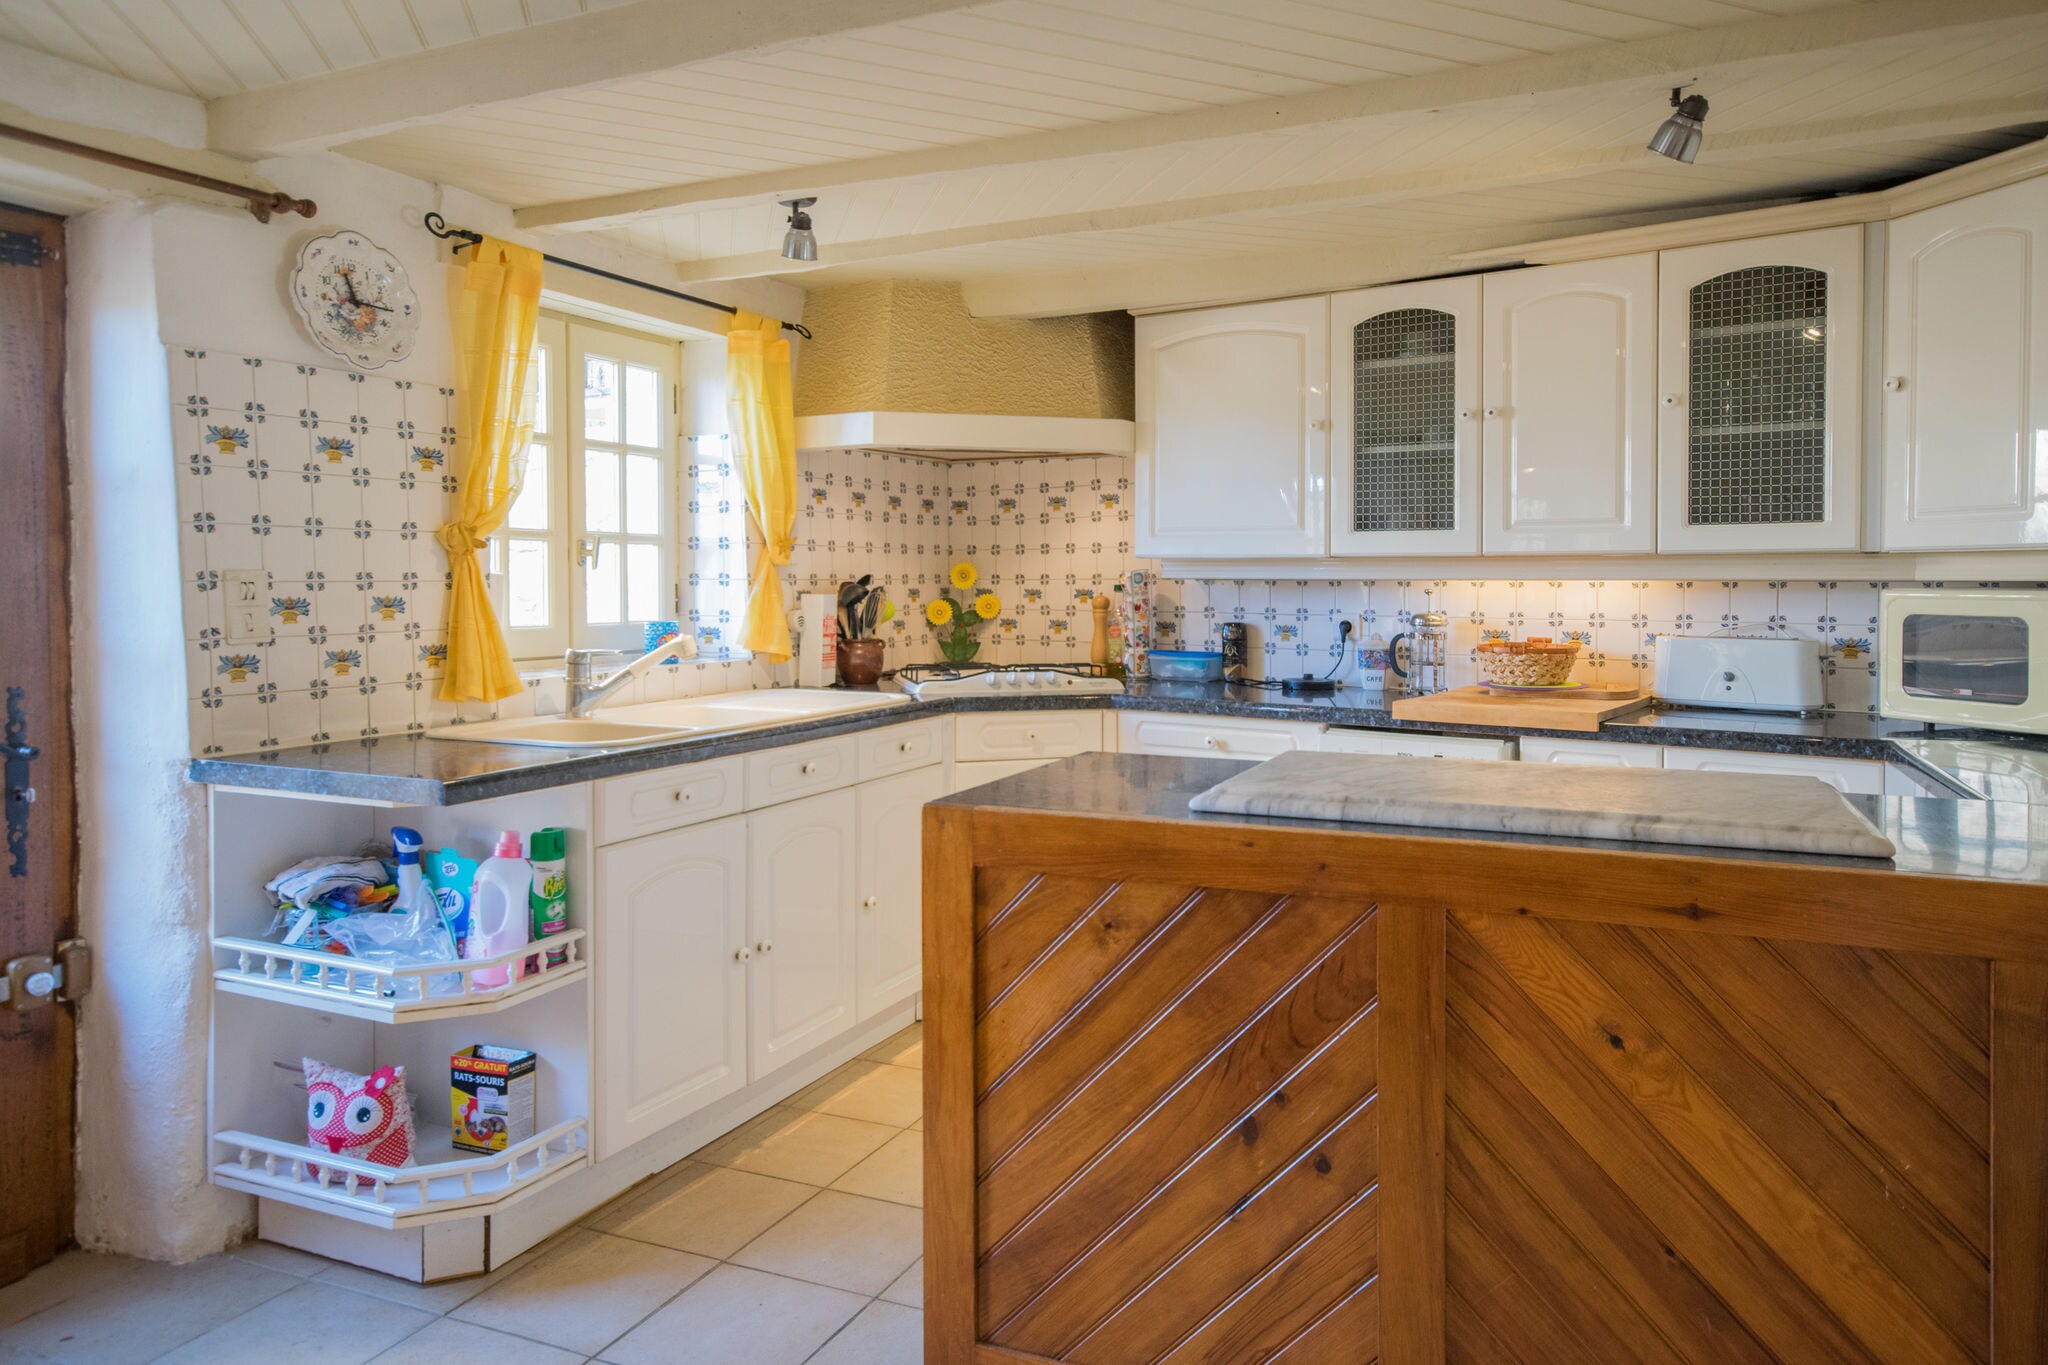 Maison de vacances confortable à Puy-l'Évêque avec terrasse